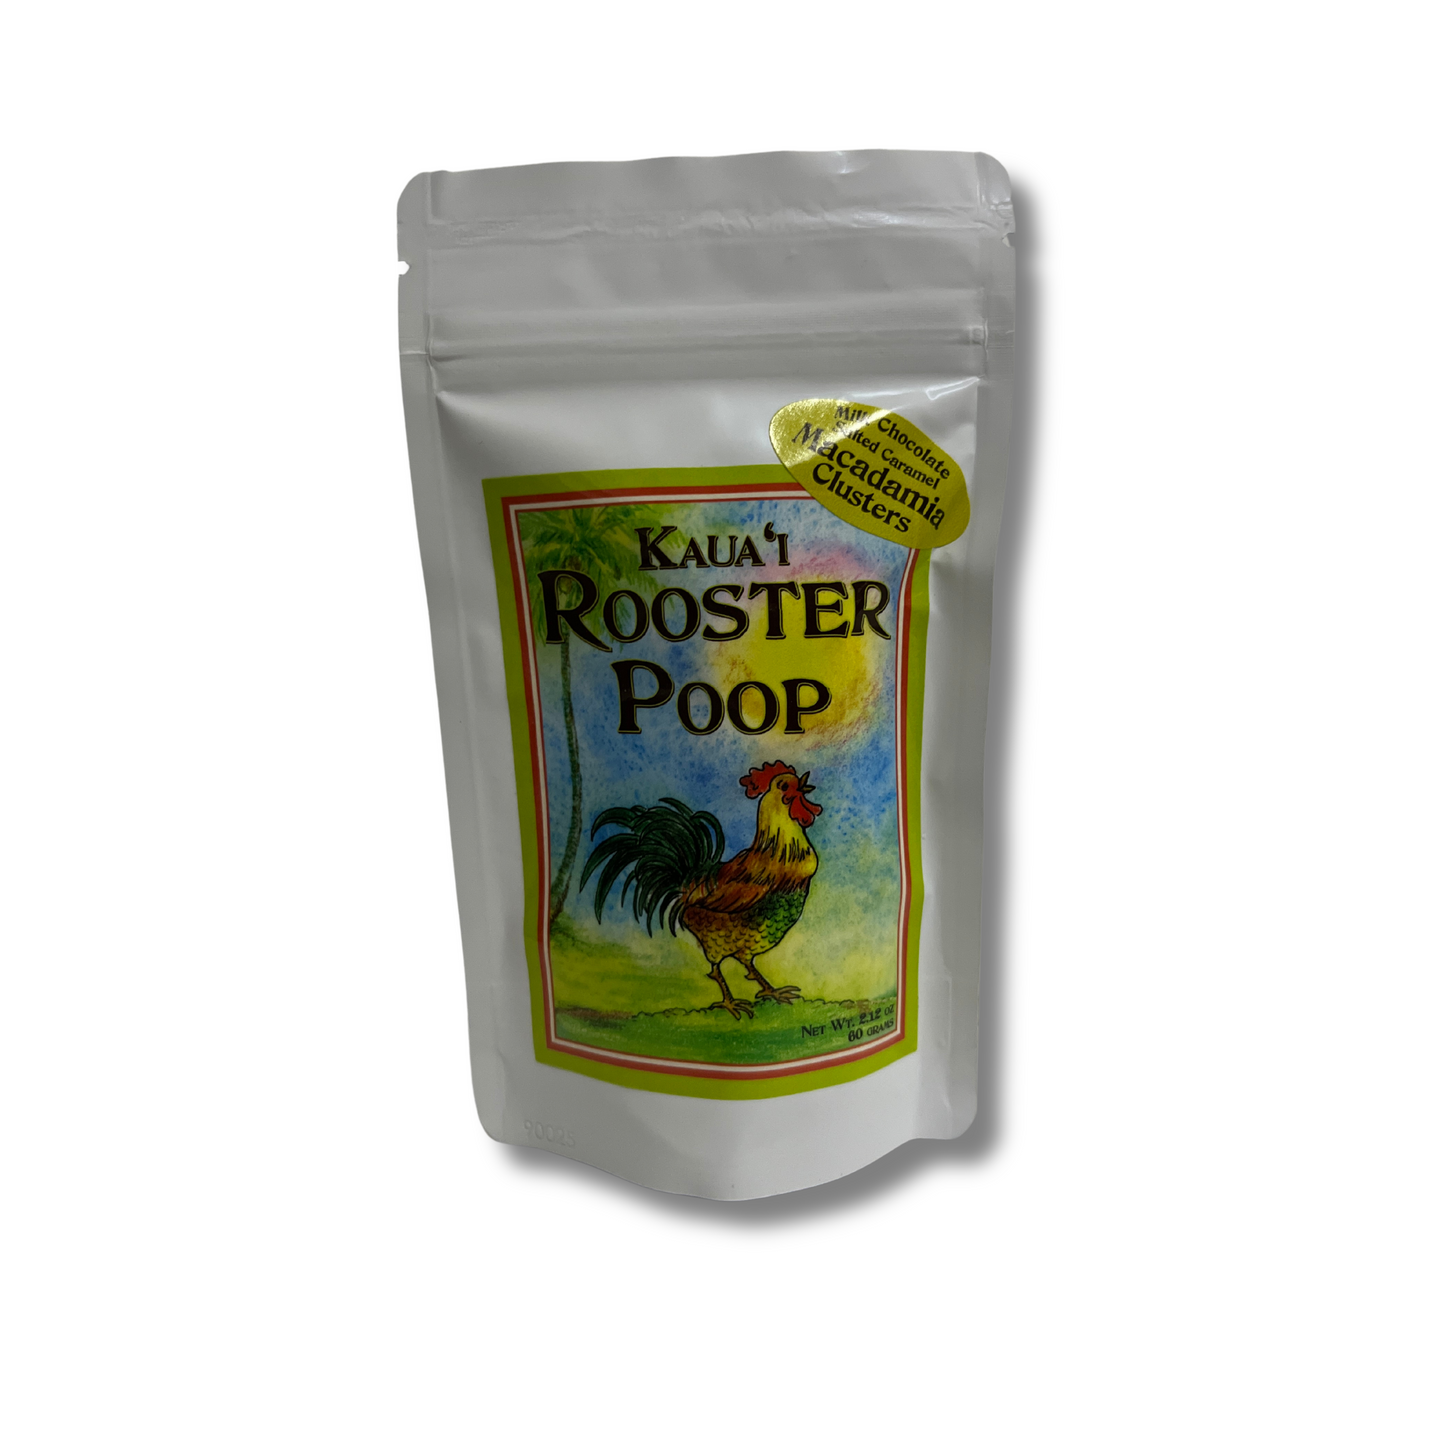 Rooster Poop